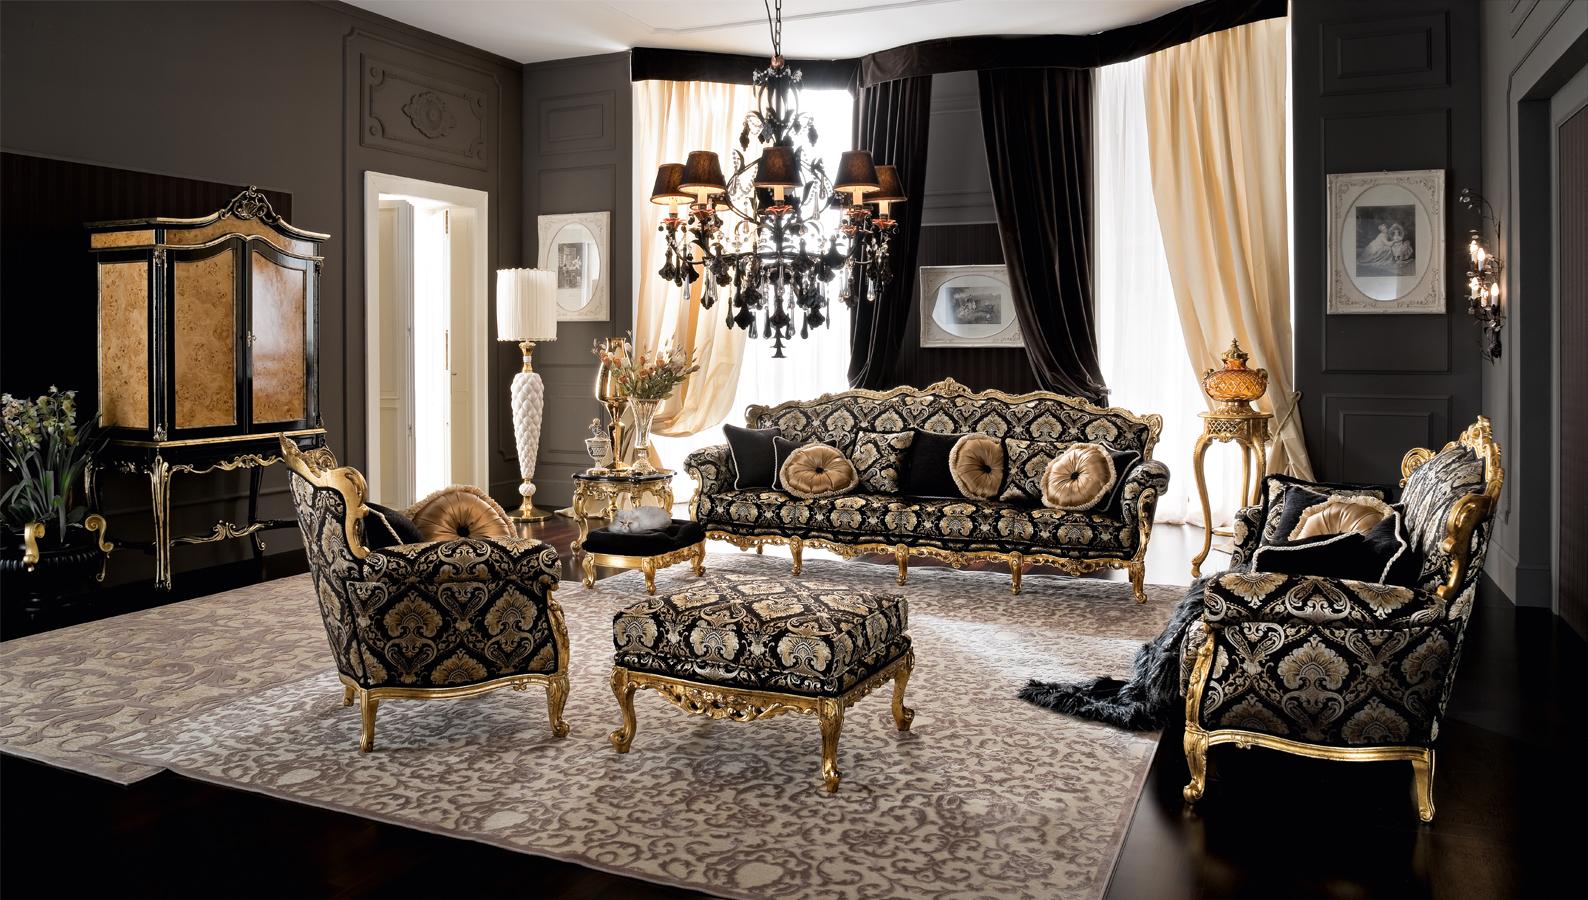 Petit pouf baroque avec tissu damassé et base en bois massif doré à la feuille. Ce tabouret rembourré est parfait s'il est combiné avec le fauteuil noir baroque conçu et produit par Modenese pour meubler des intérieurs de luxe.
 